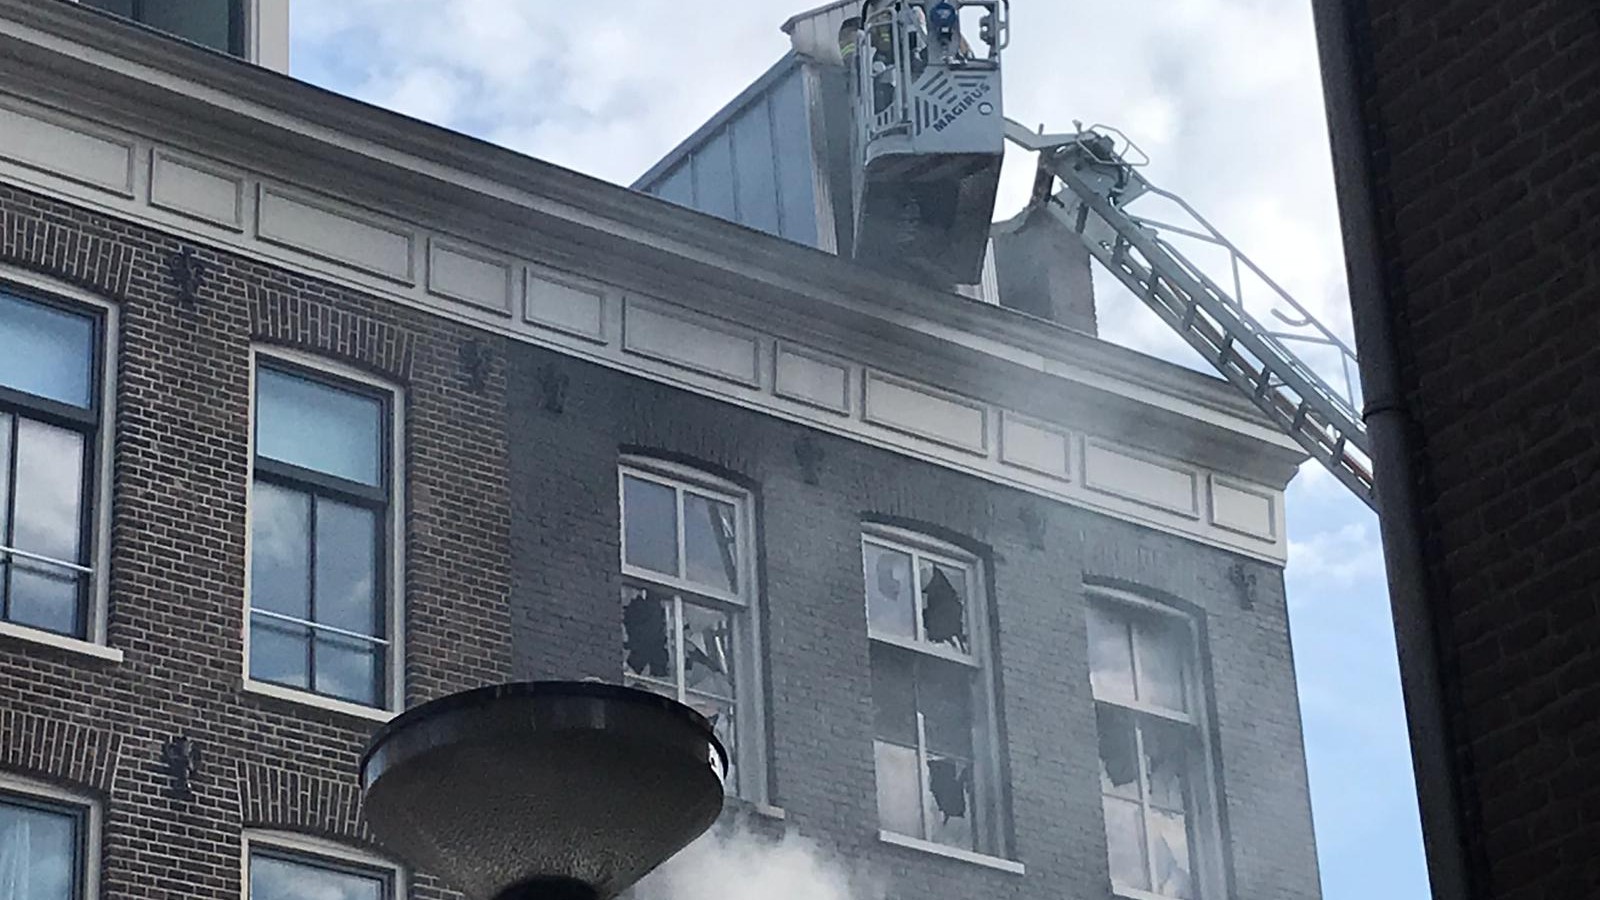 Grote uitslaande brand in woning in Czaar Peterbuurt